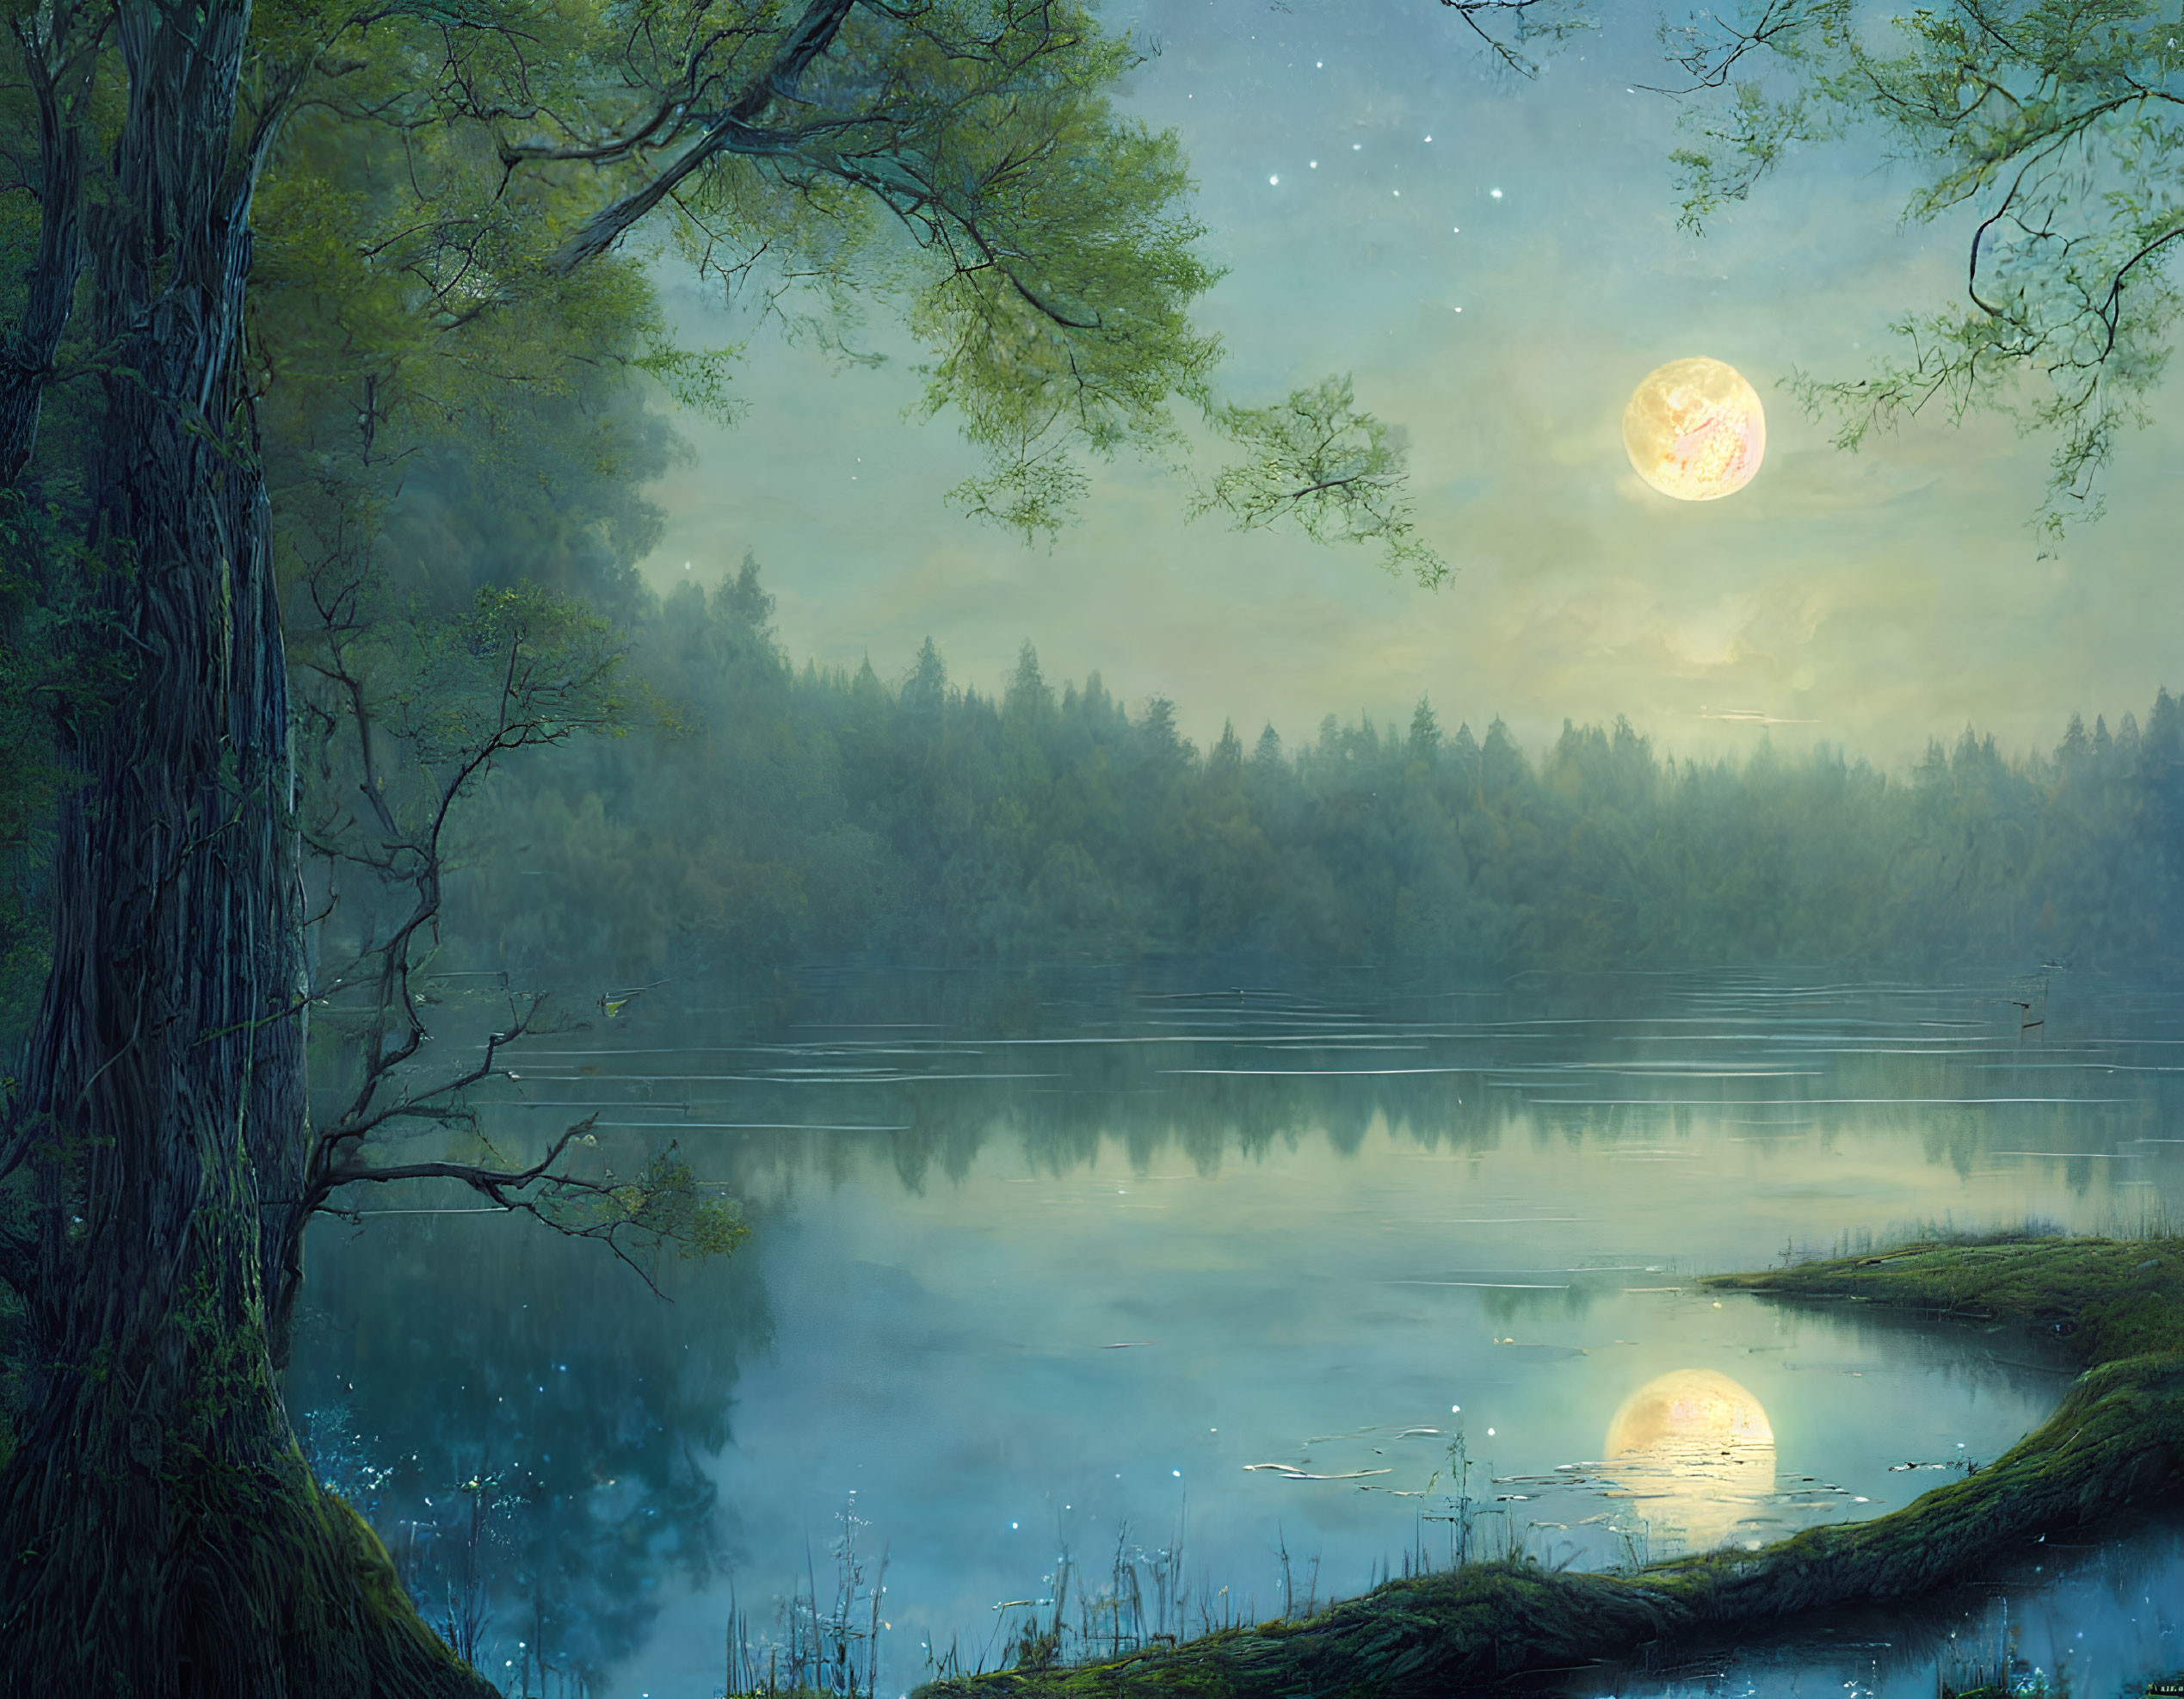 Nighttime Forest Scene: Full Moon Reflected on Still Lake, Lush Trees, Starry Sky